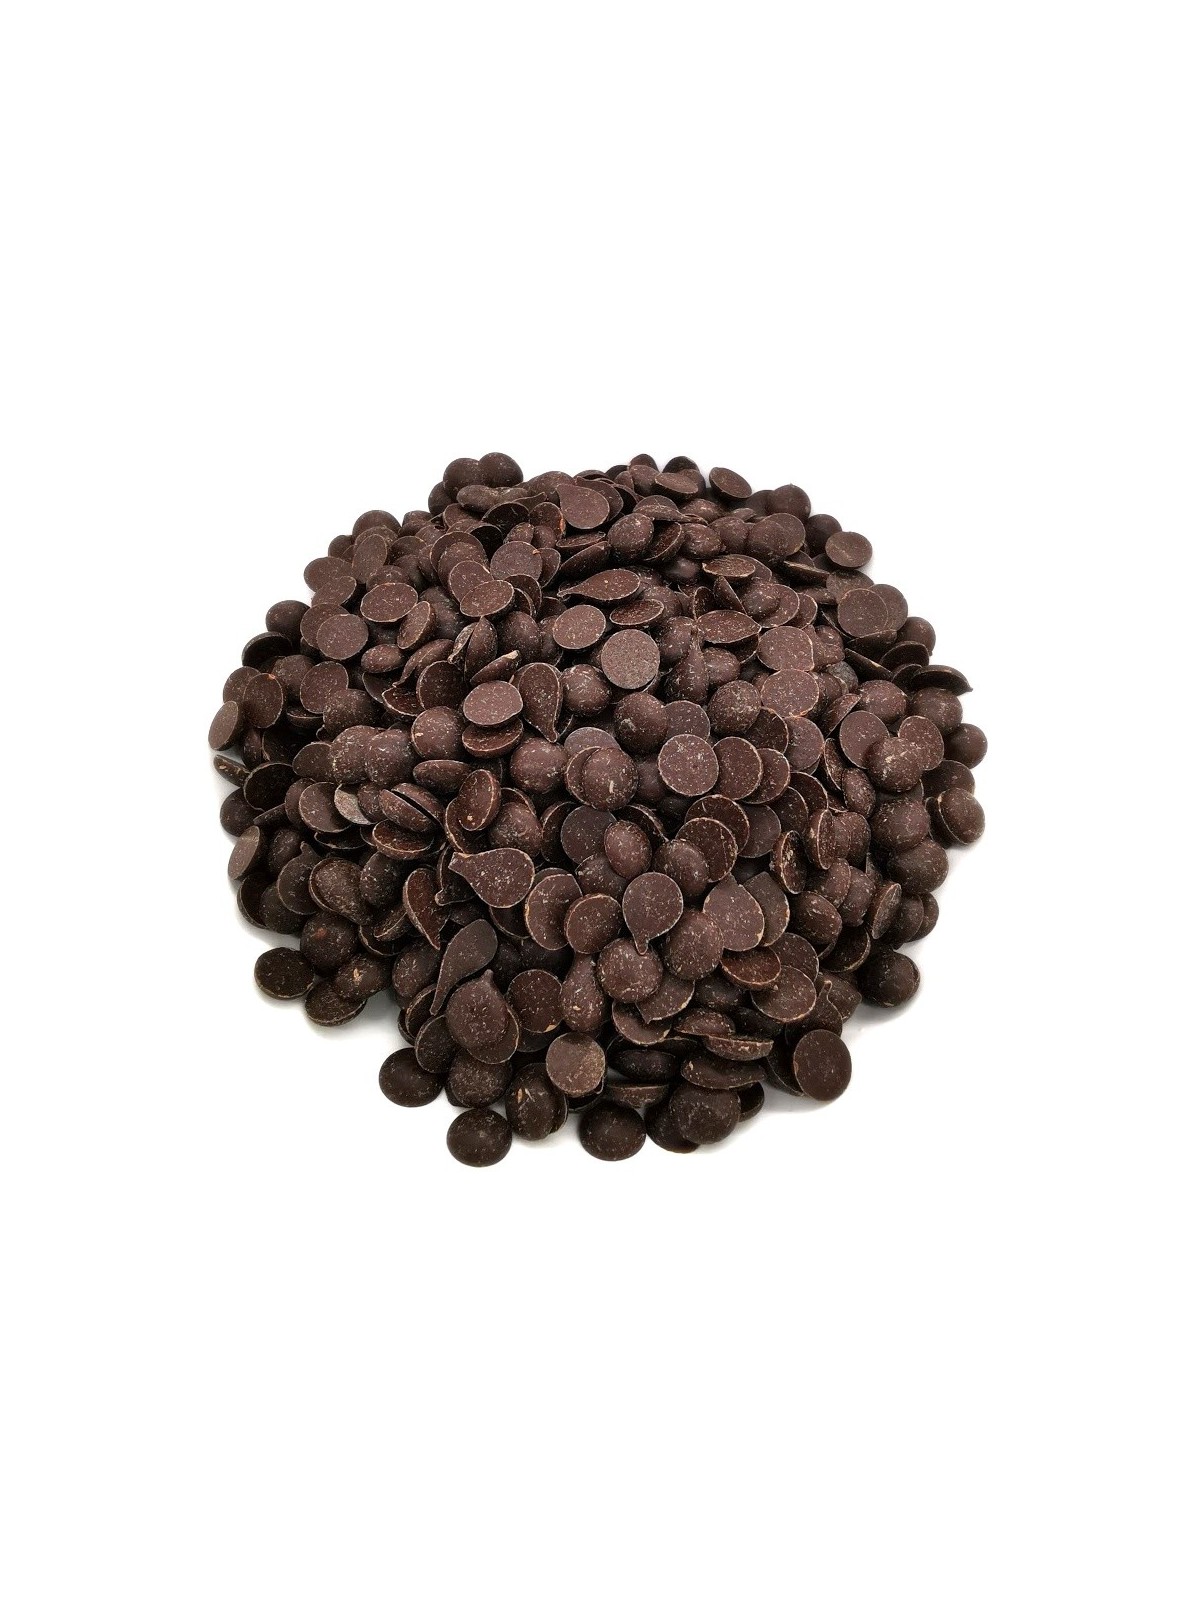 Horká čokoláda 60% pecky - dark discs - 500g